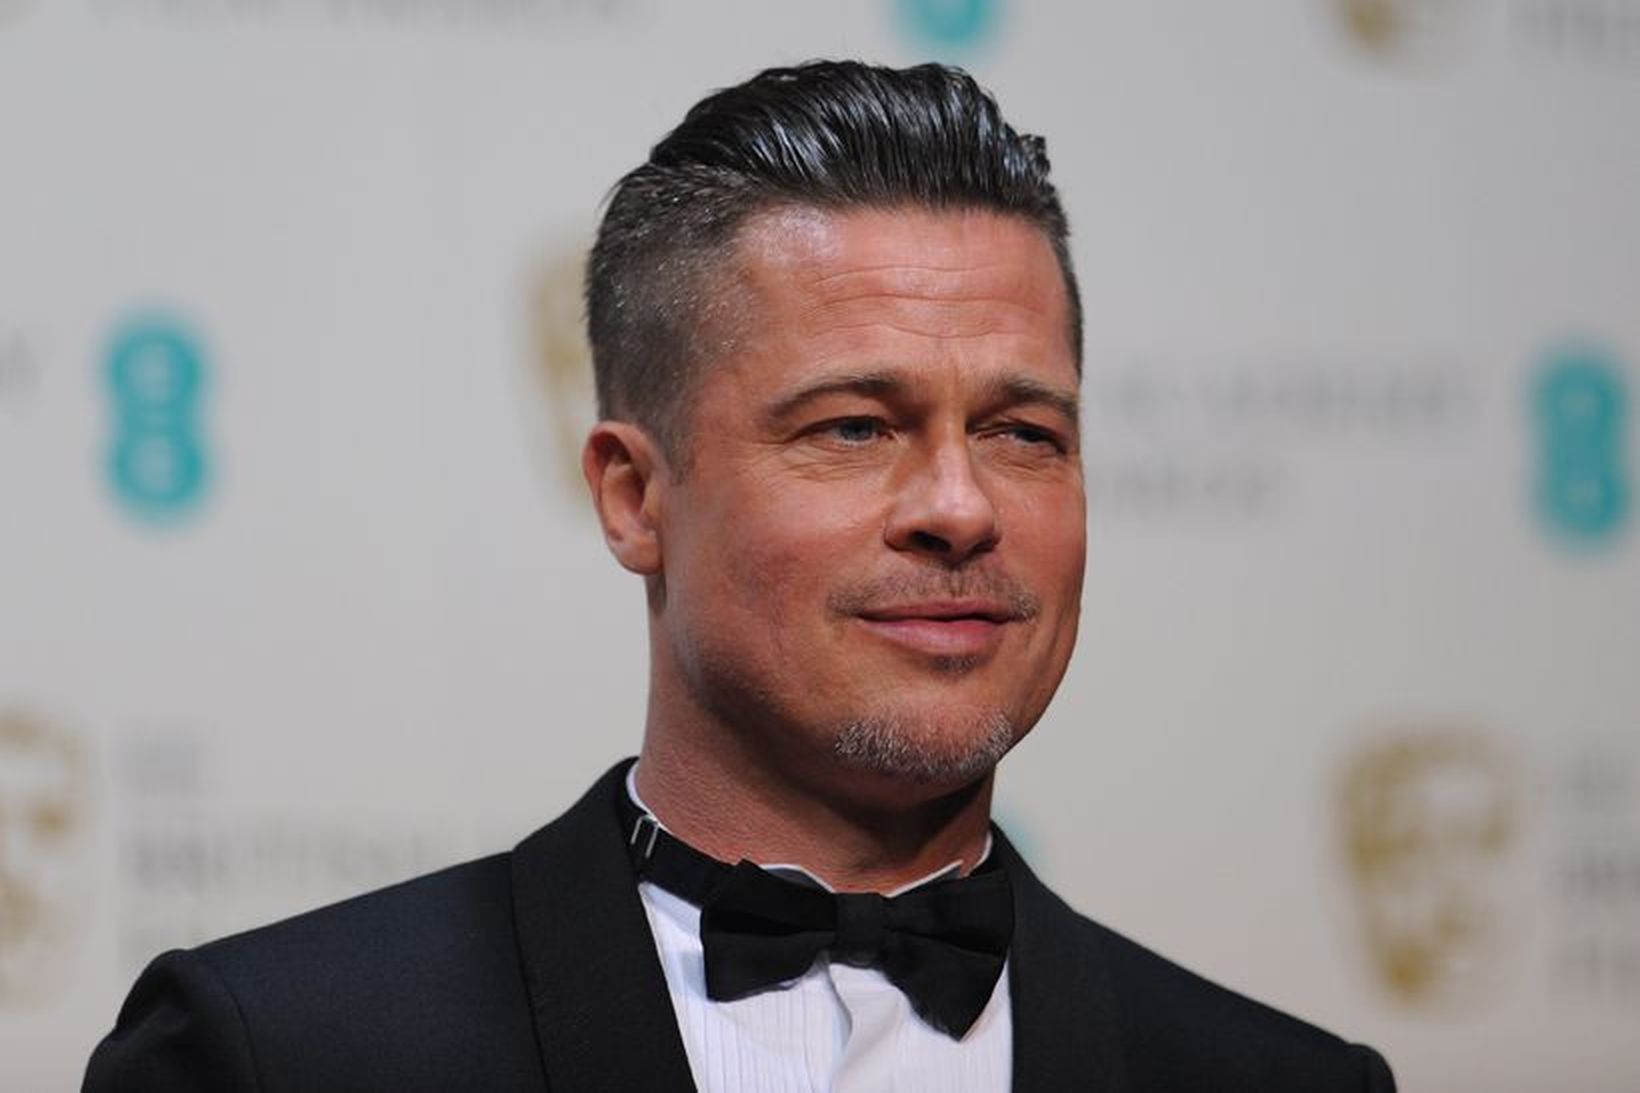 Brad Pitt þykir líklegur sem svaramaður í brúðkaupi George Clooneys …